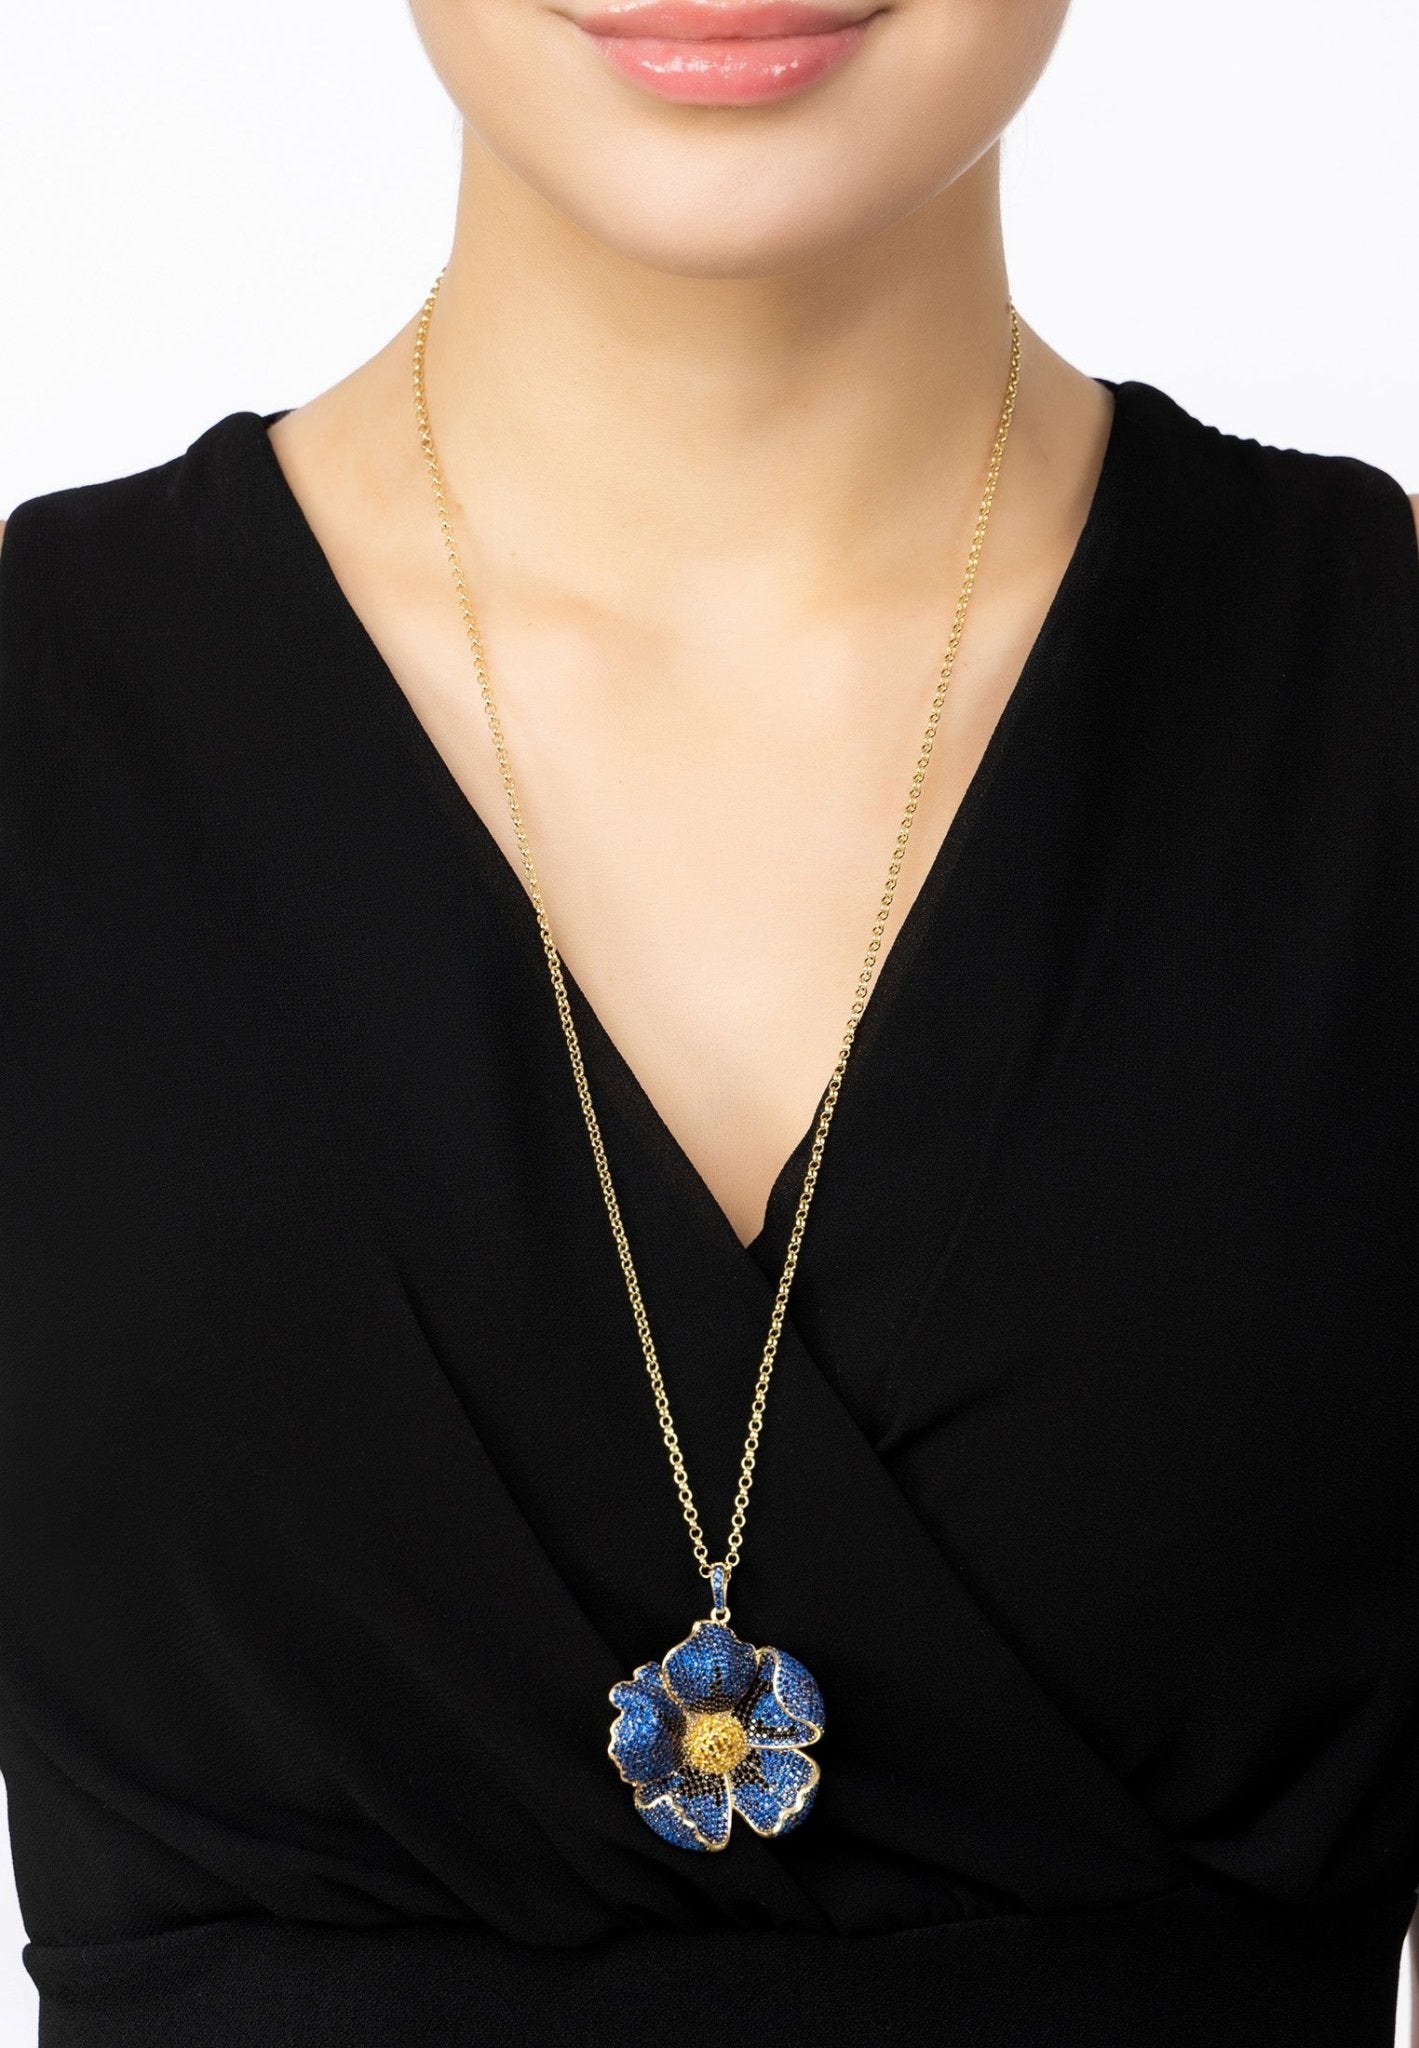 Poppy Pendant Necklace Gold Sapphire Blue Cz - LATELITA Necklaces